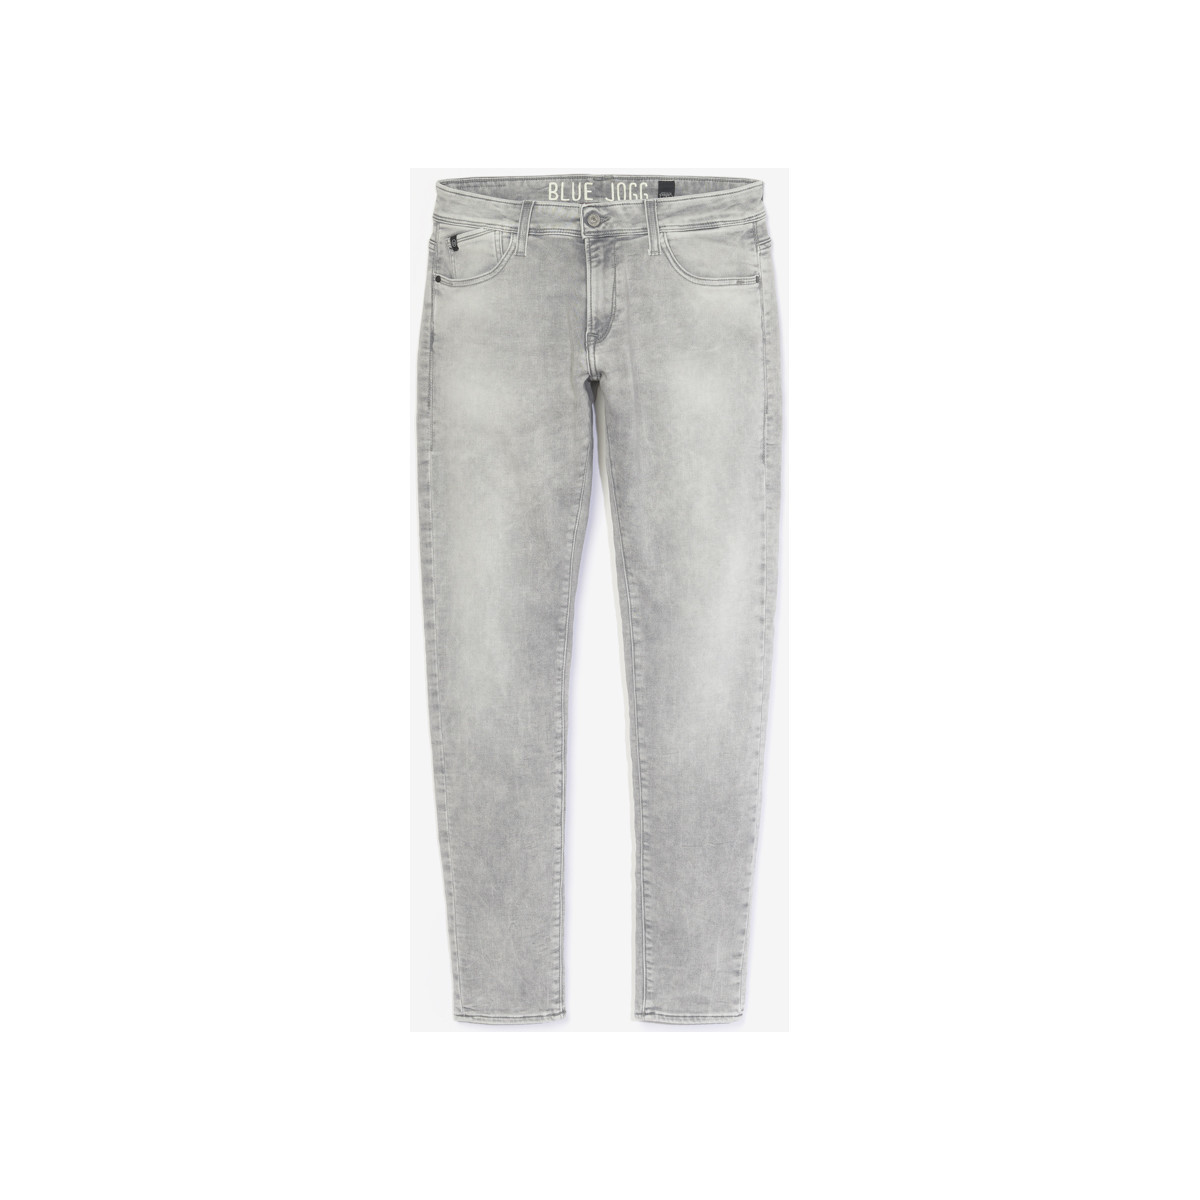 Le Temps des Cerises Gris Jogg 700/11 adjusted jeans gr